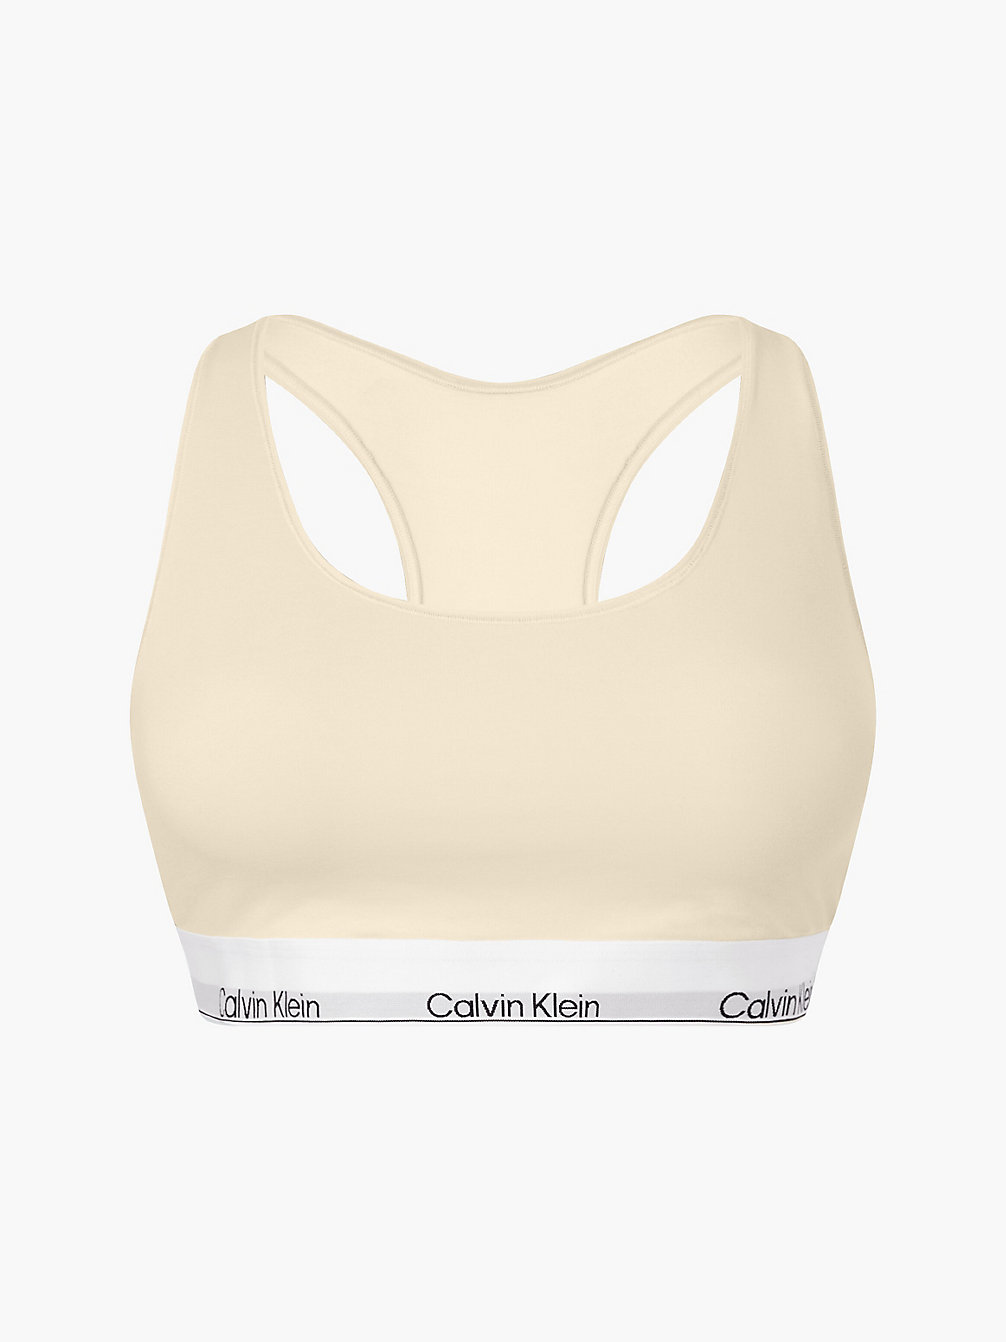 STONE > Bralette Großen Größen – Modern Cotton > undefined Damen - Calvin Klein